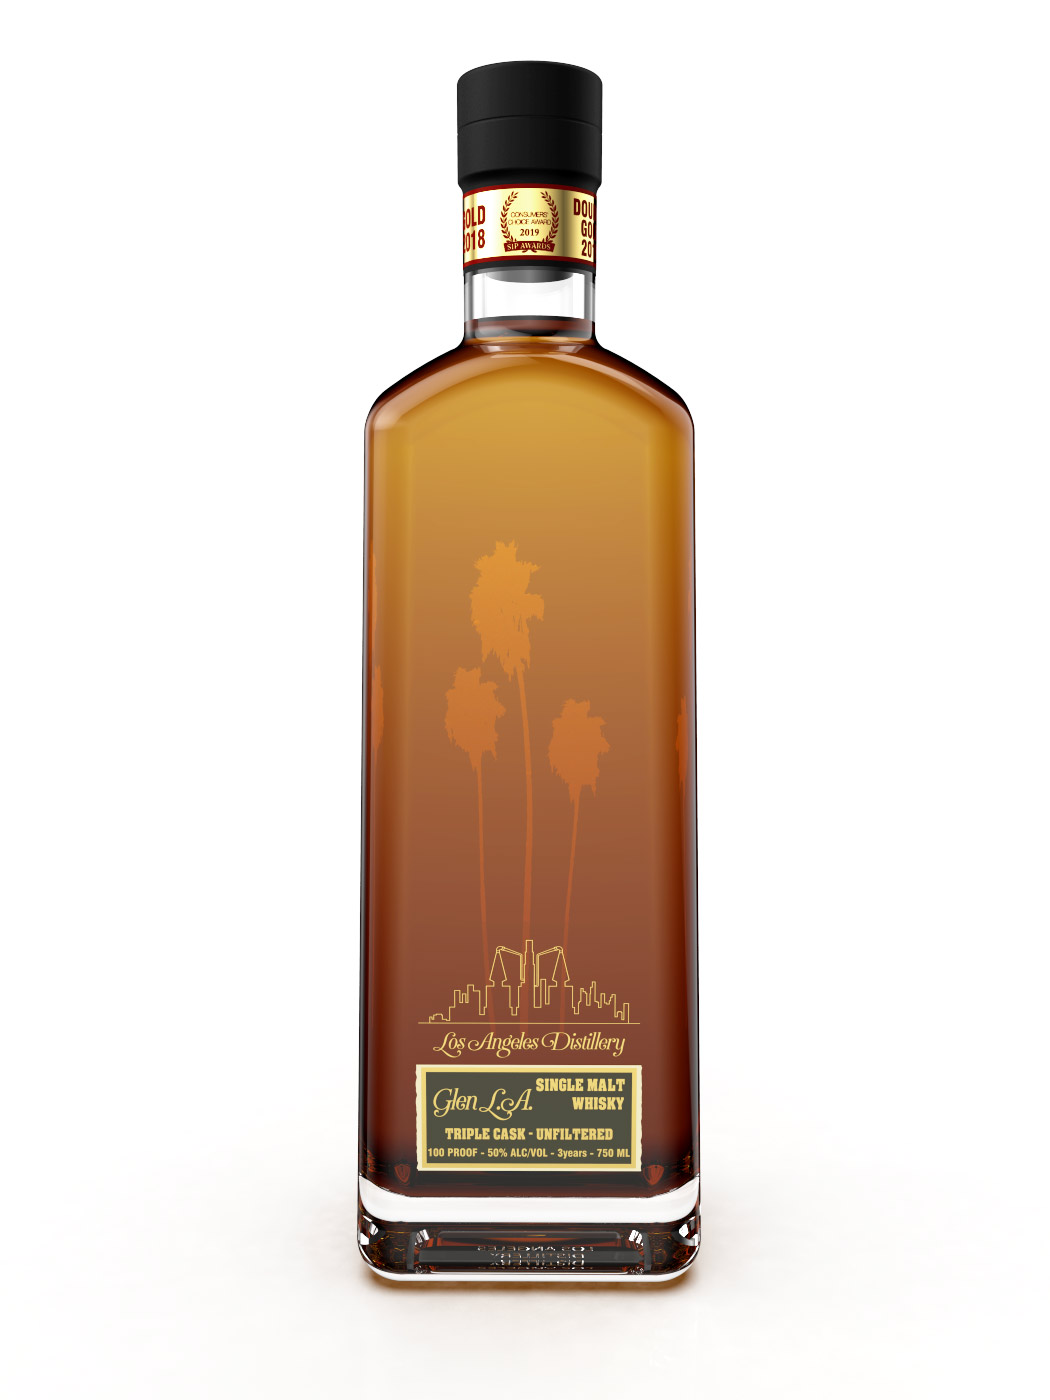 LA Distillery Glen LA Triple Cask Single Malt Whisky